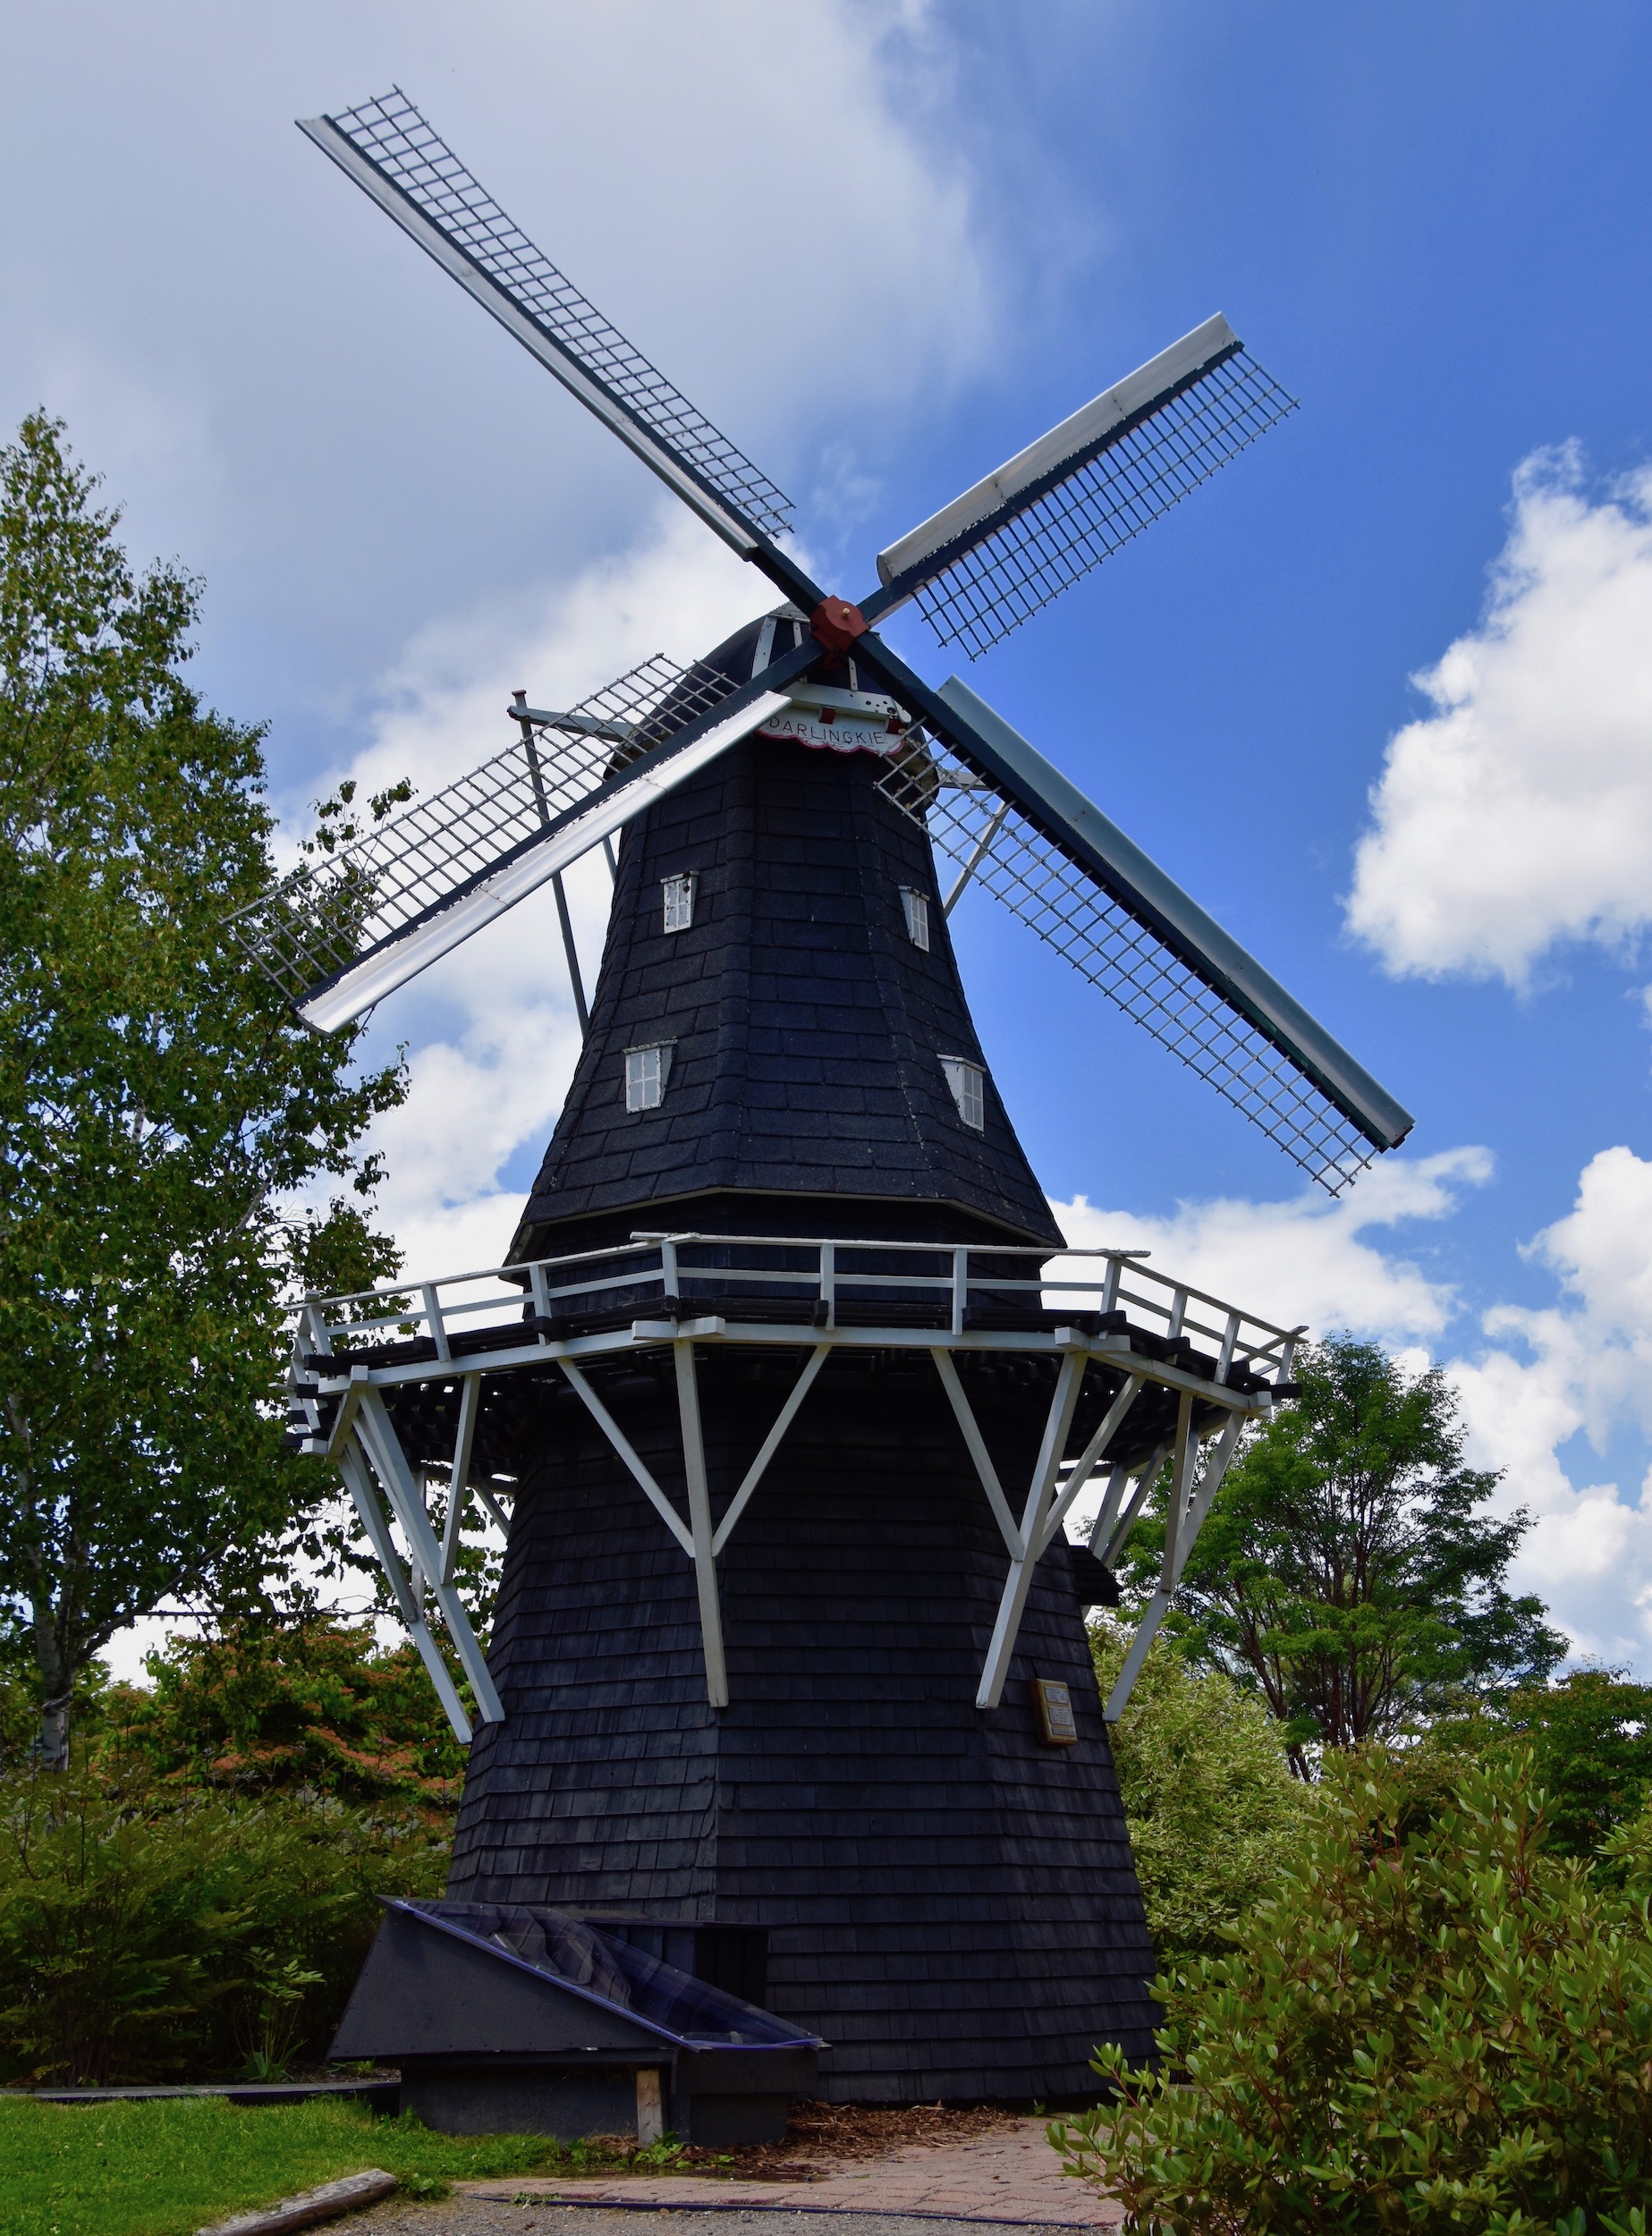 Dutch Windmill, Kingsbrae Garden